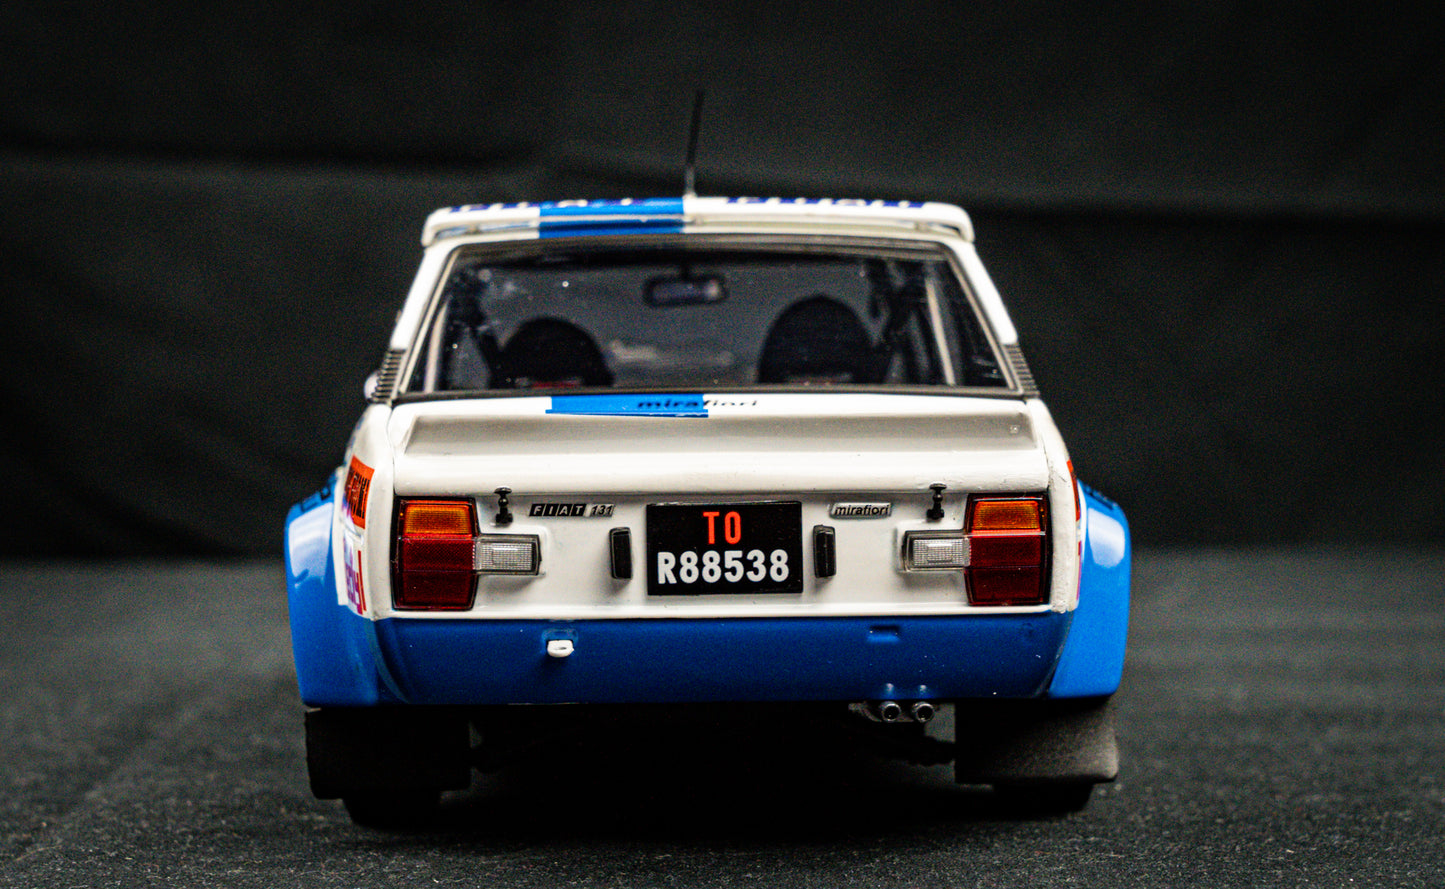 Fiat 131 Abarth #1 Markku Alen / Kivimäki - Sieger 1000 Seen Rallye Finnland 1980 - Kyosho 1:18